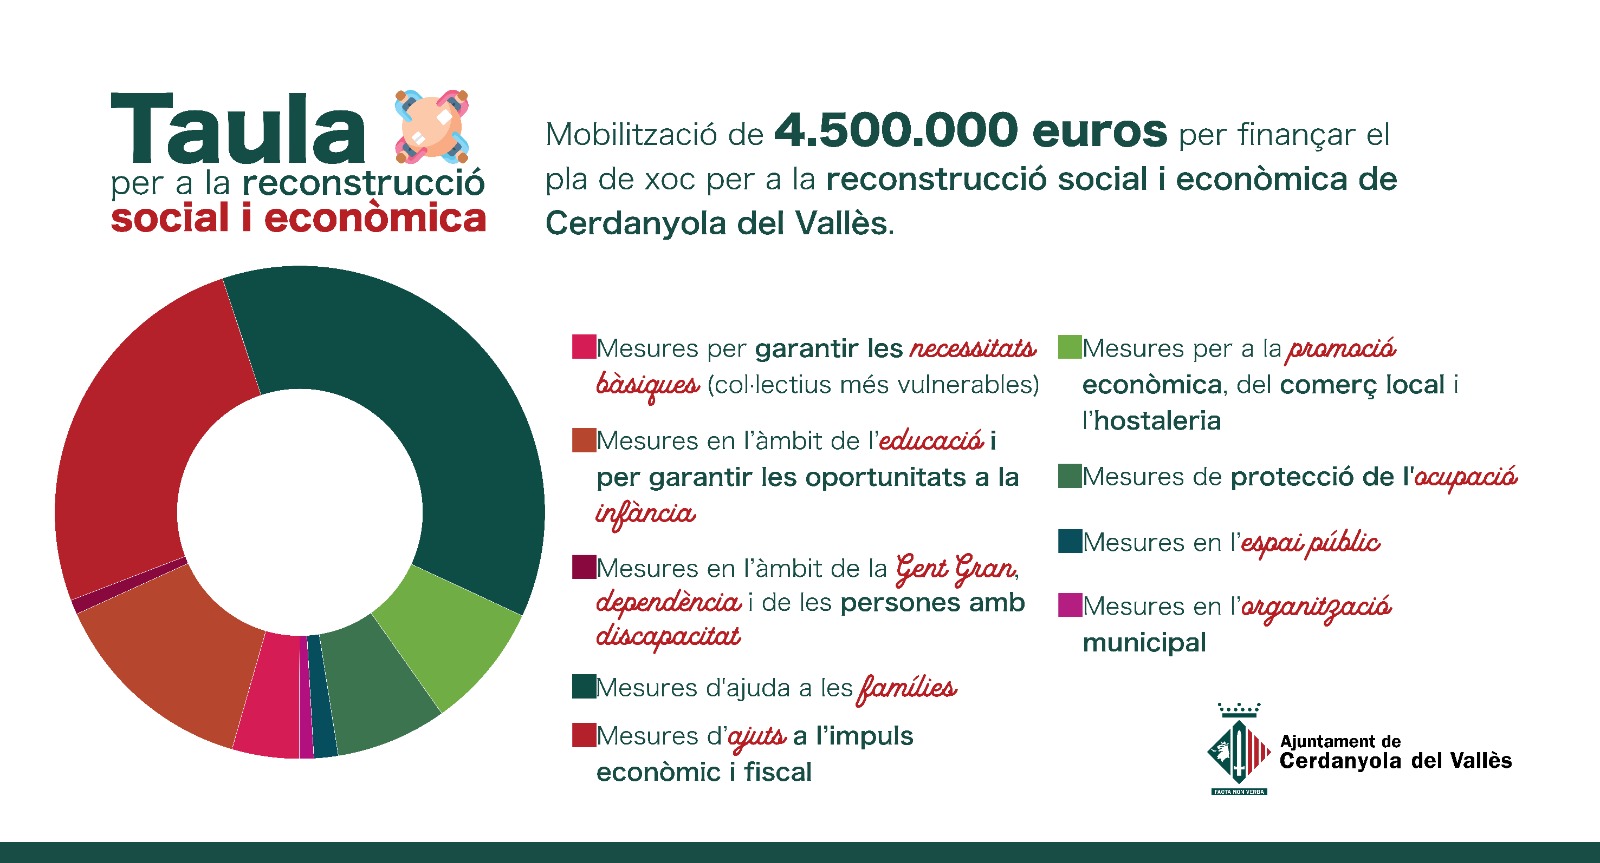 Infografia amb el repartiment dels 4,5M euros entre les diferents mesures